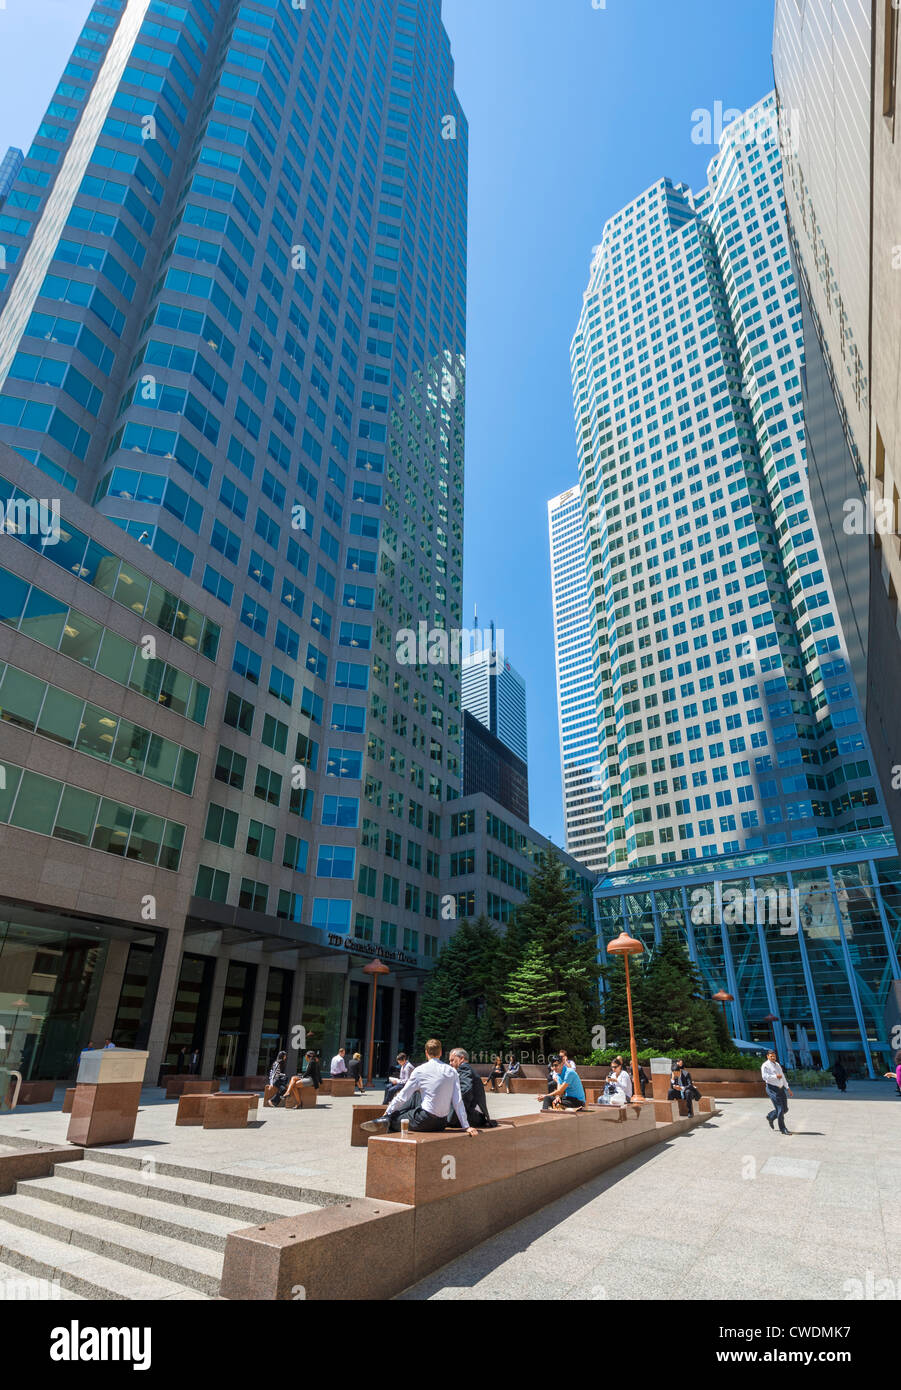 Immeubles de bureaux au lieu Brockfield off/Street dans le quartier financier, Toronto, Ontario, Canada Banque D'Images